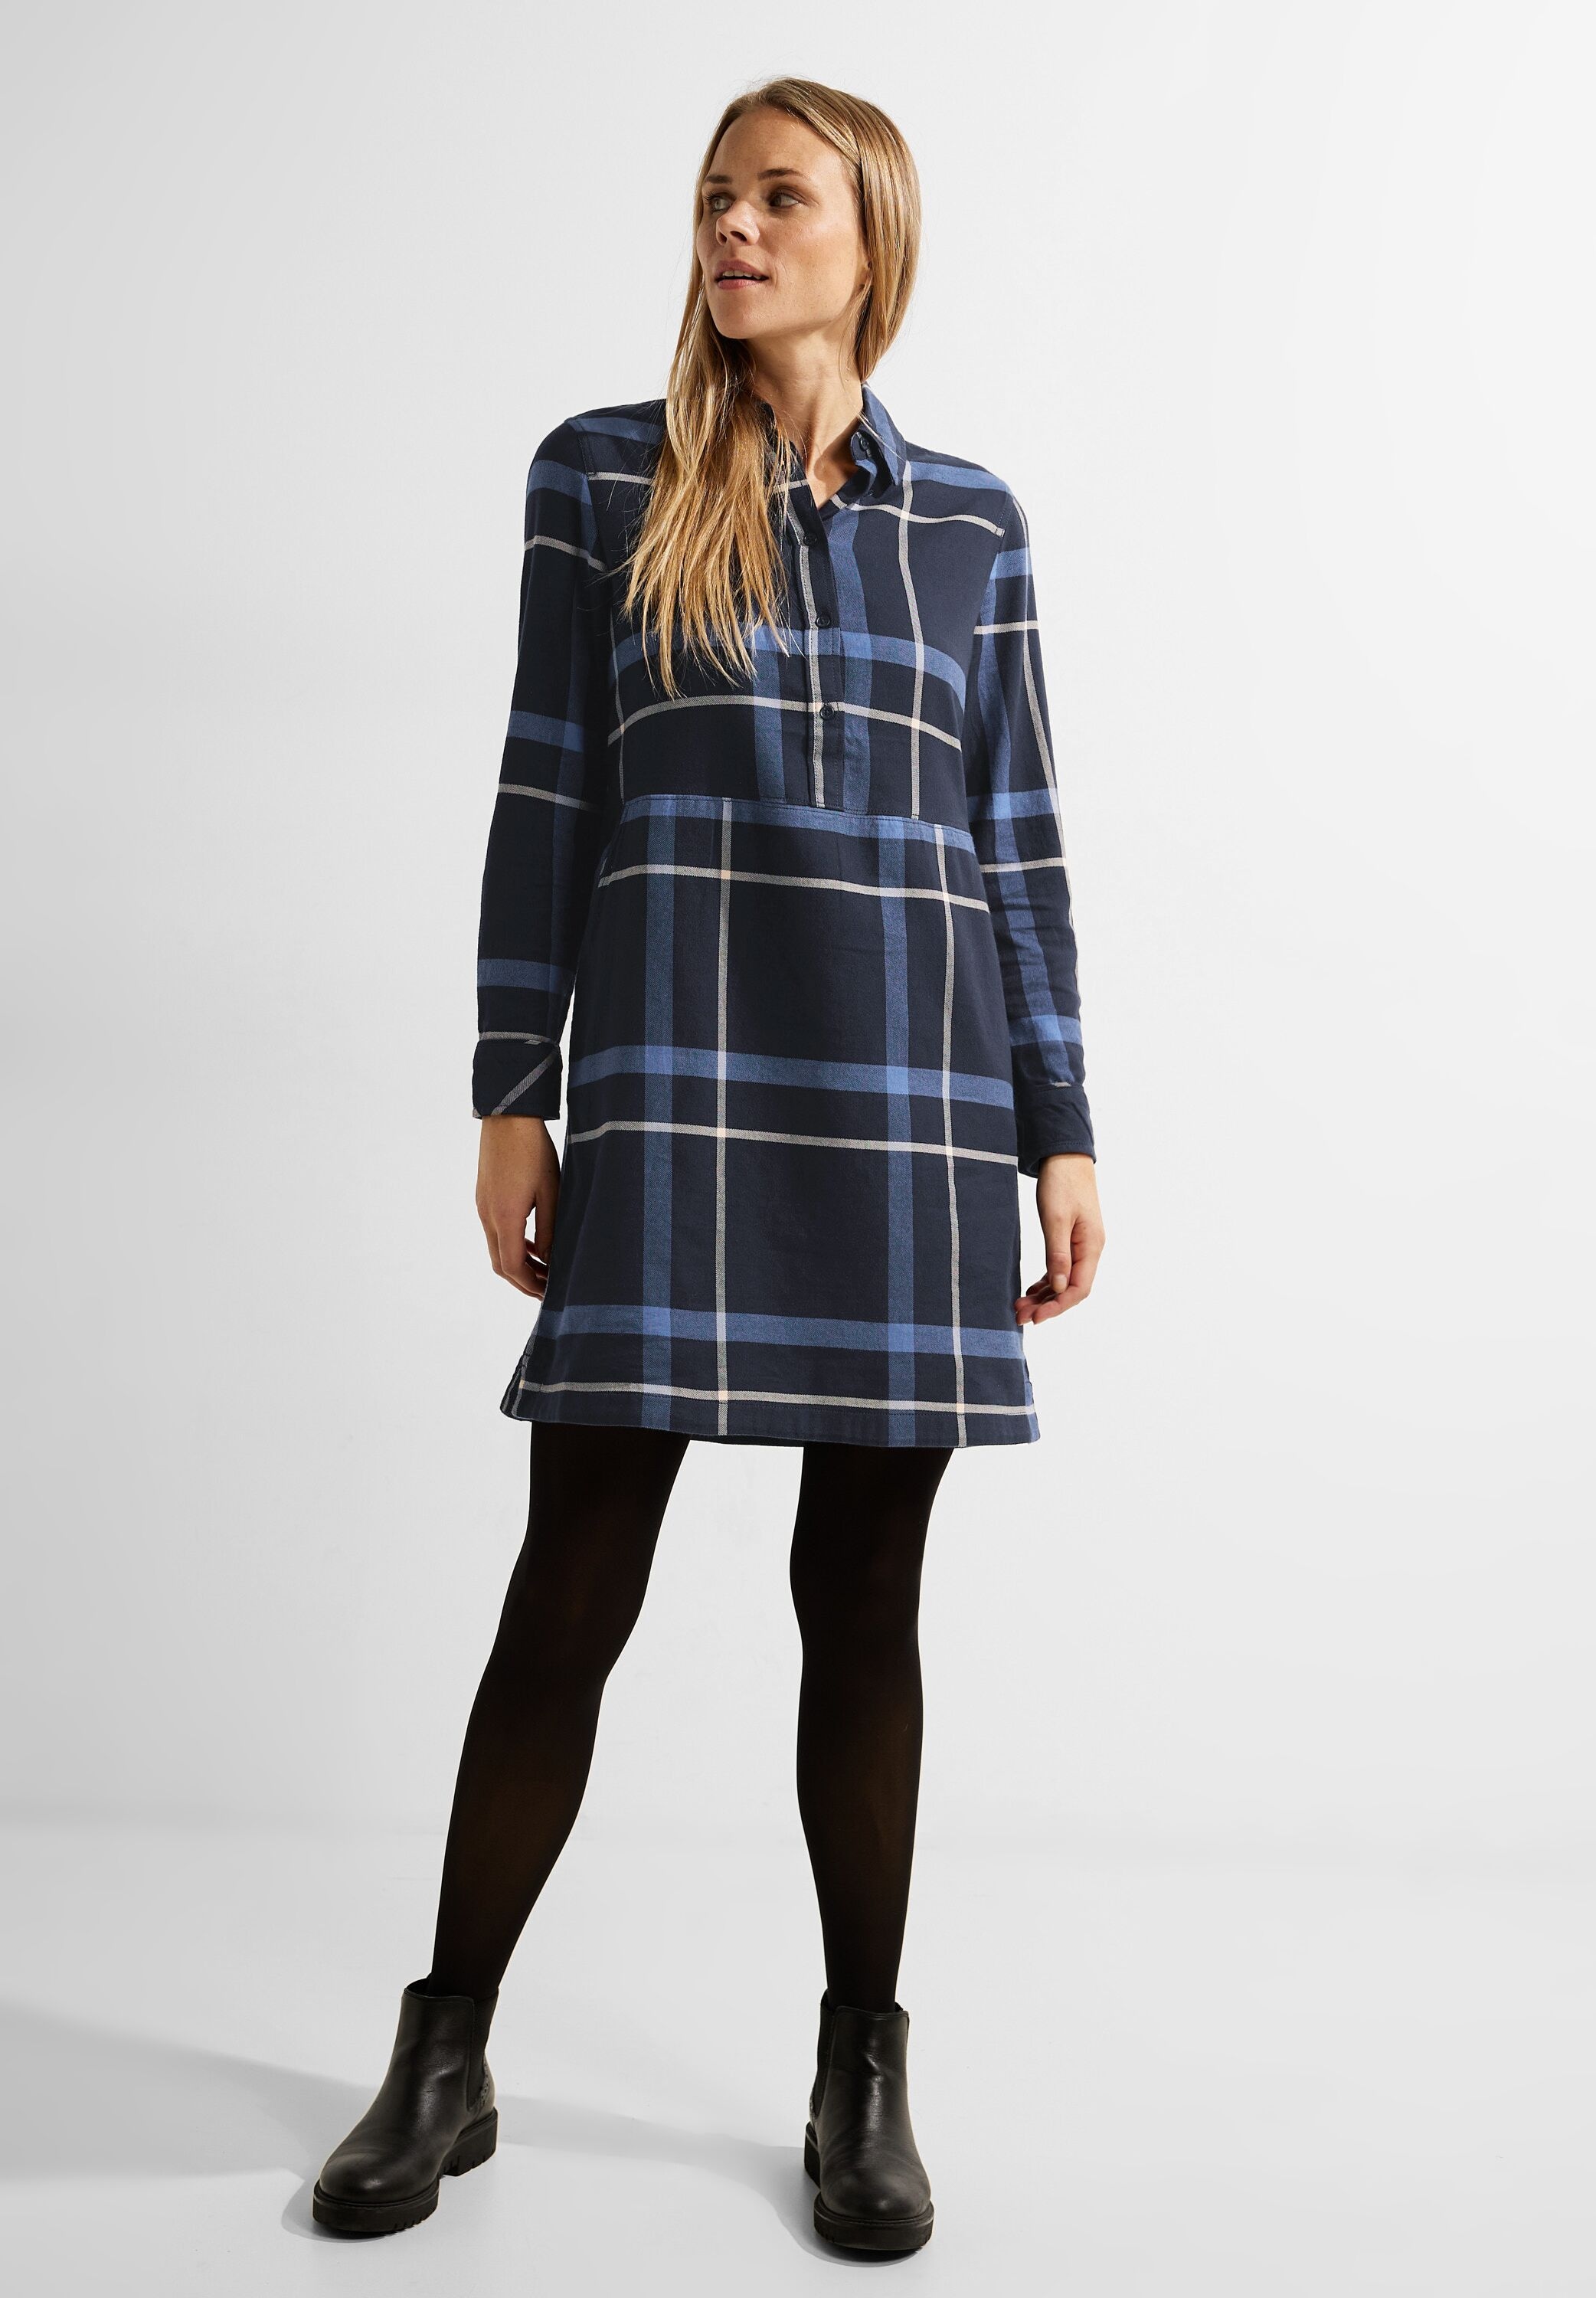 kaufen »Flannel OTTO Blusenkleid Shop Check im Dress« Cecil Online